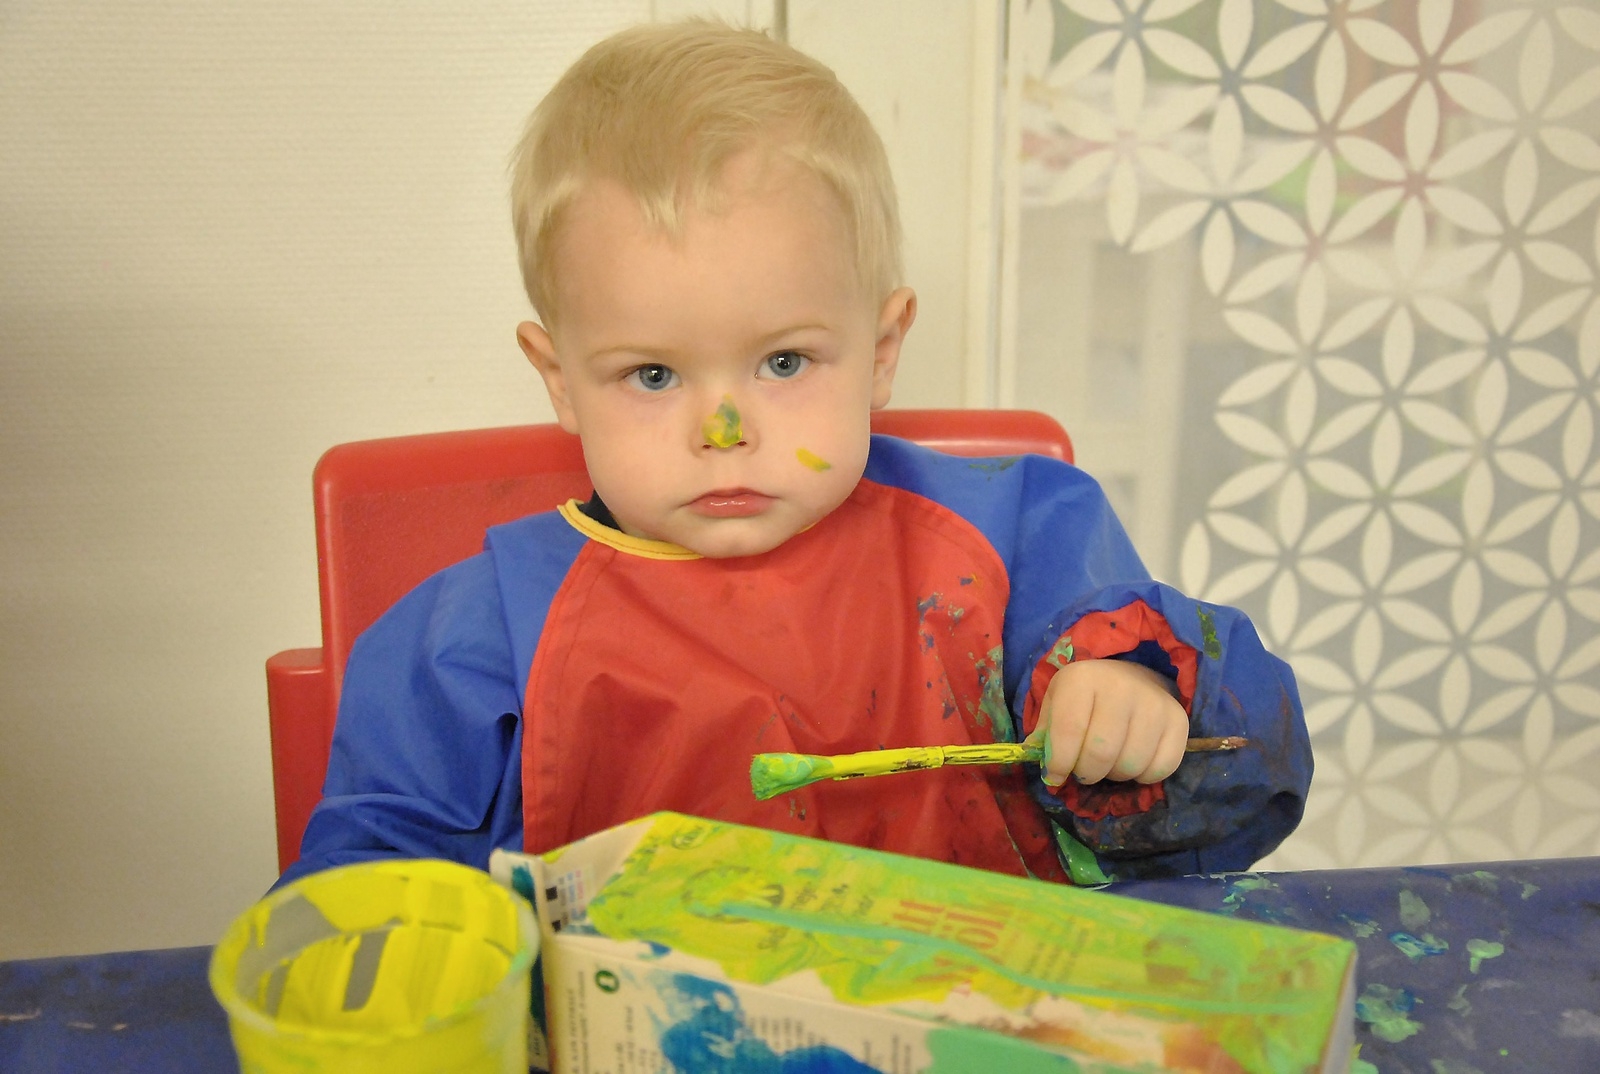 Han är väldigt säkert på handen; Samuel Olsson, 2,5 år. Utan spegel lyckades han måla sin egen näsa helt perfekt. Visst blev den fin?
Foto: Marie Strömberg Andersson